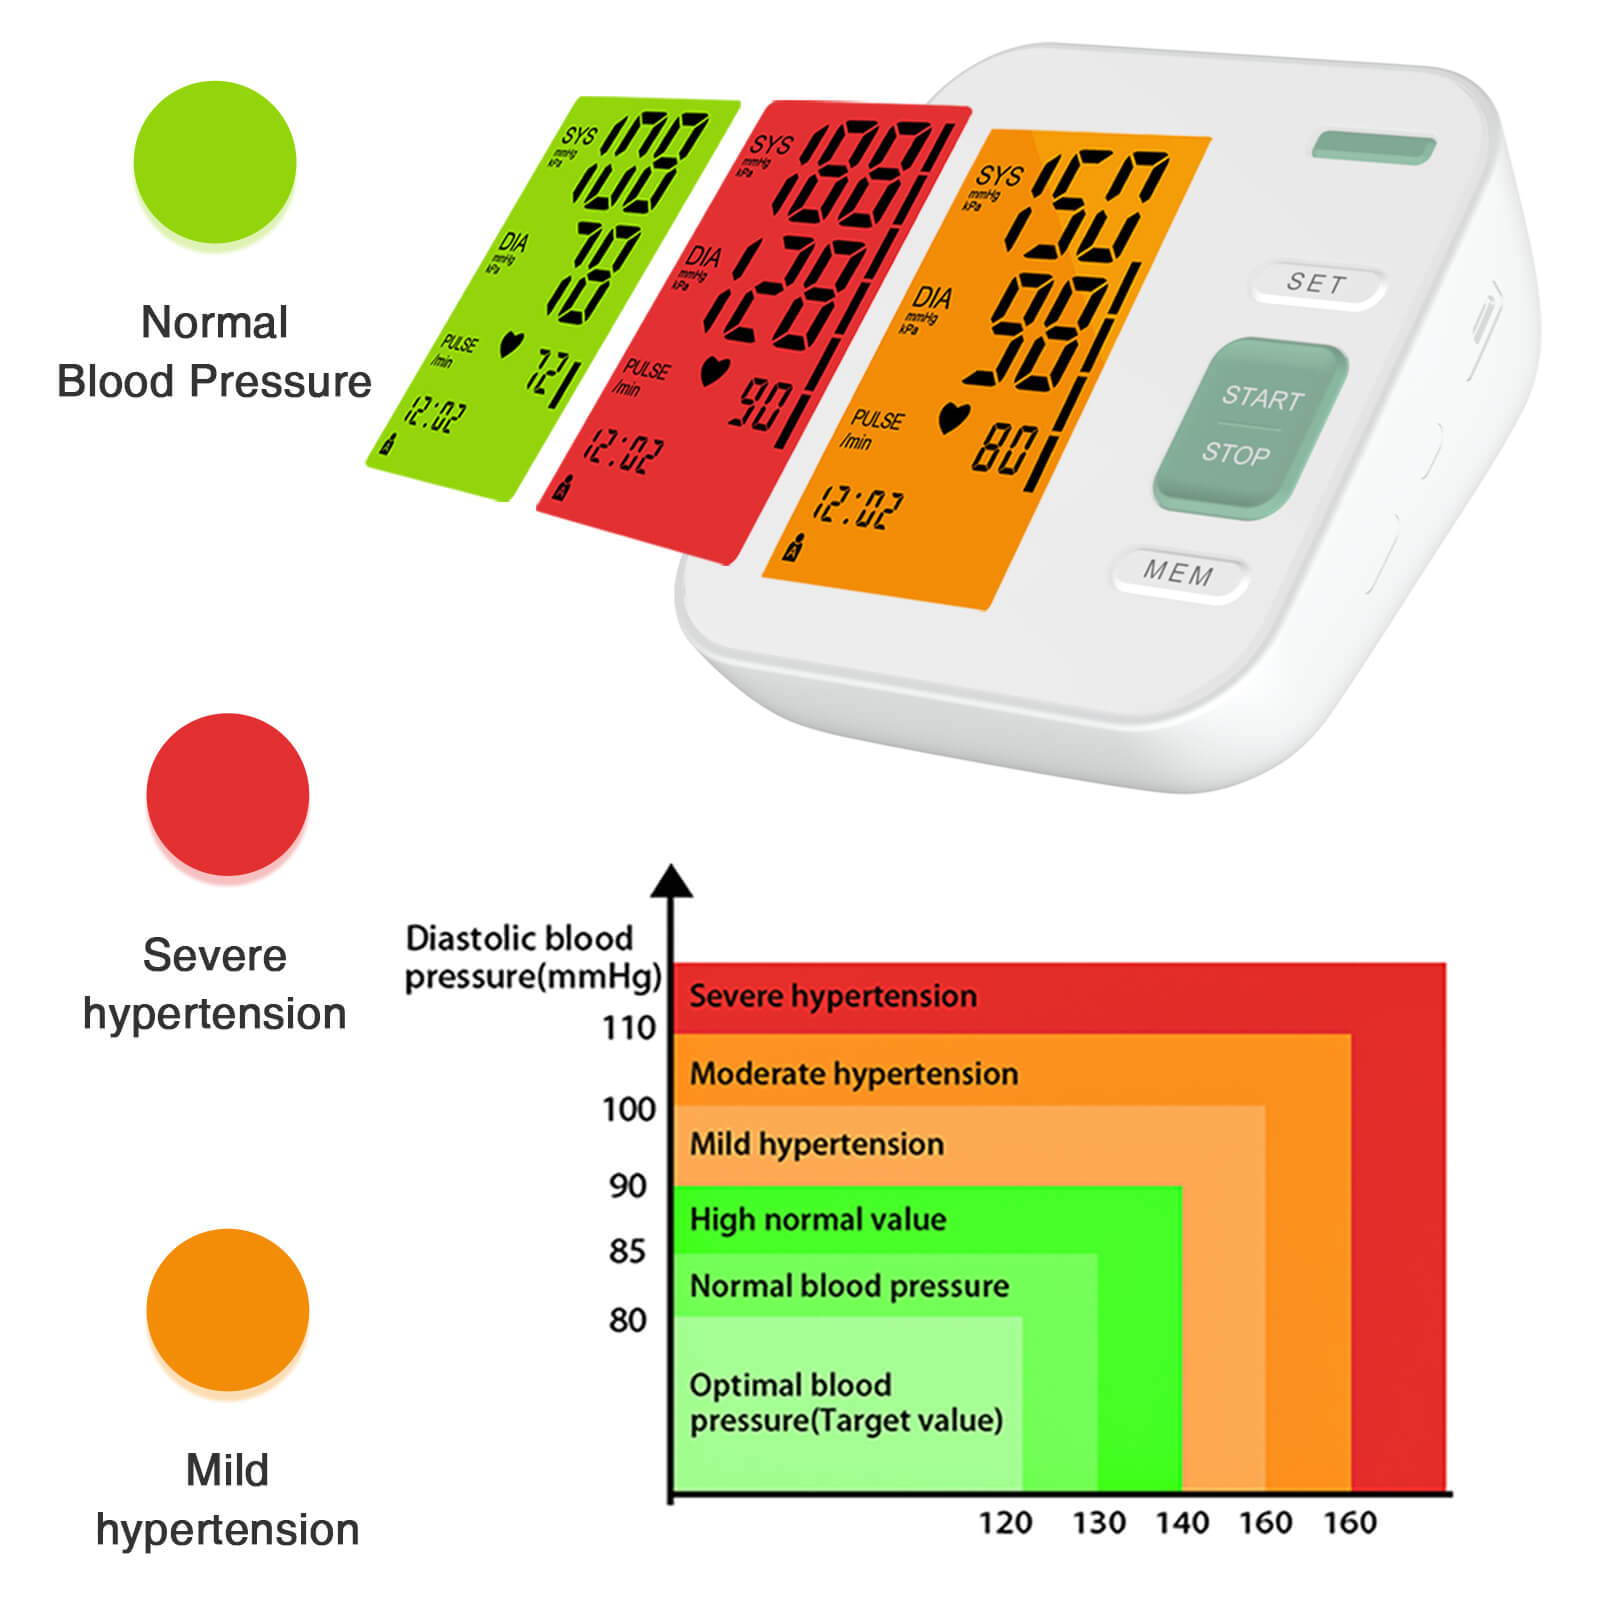 빨간색, 녹색 및 주황색으로 다양한 수준의 고혈압을 보여주는 다이어그램